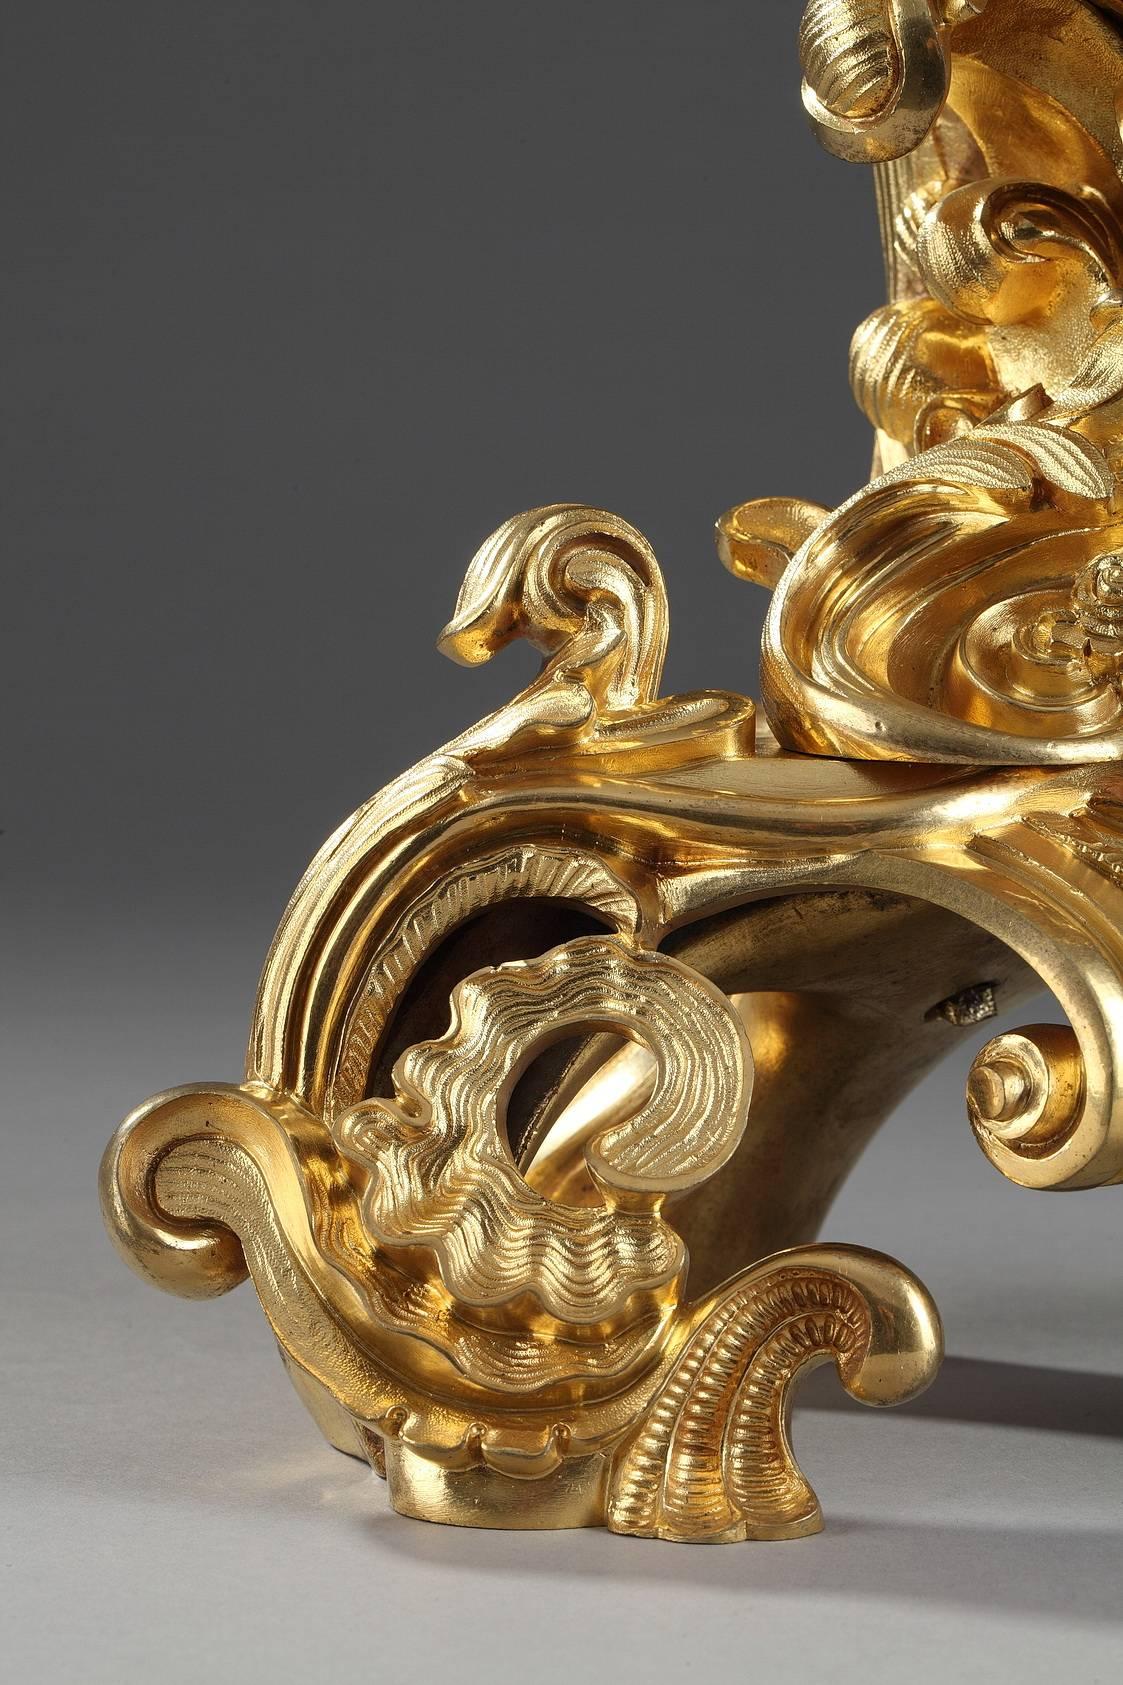 Petite pendule en bronze doré de style Rocaille, richement décorée de feuillages, coquillages et rinceaux. Le cadran émaillé blanc, avec des chiffres romains pour les heures et arabes pour les minutes, est surmonté d'un Cupidon assis sur une